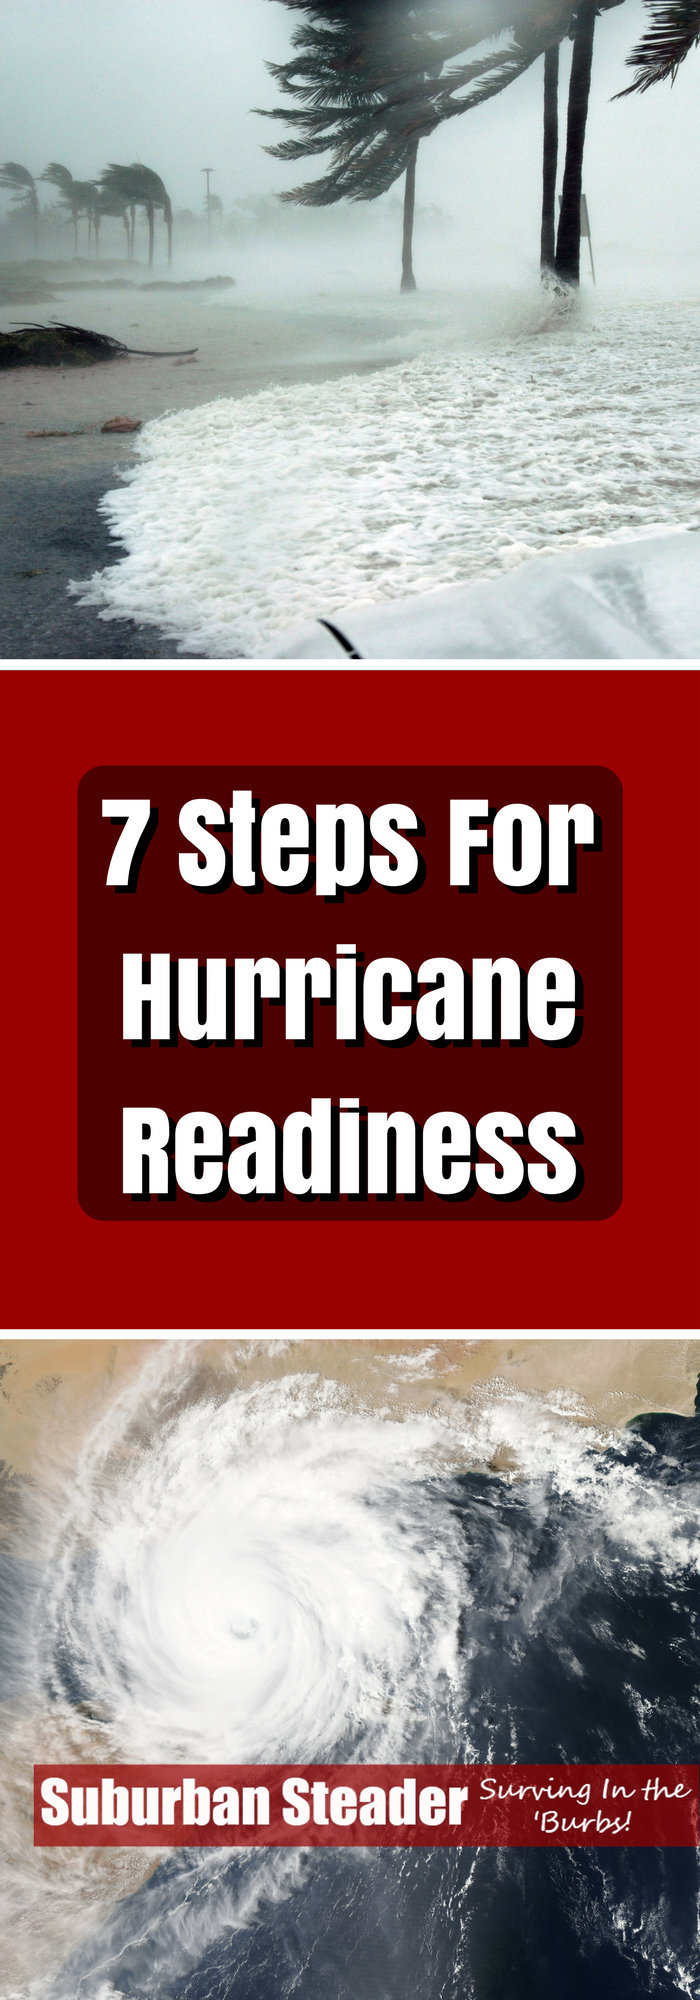 Hurricane Readiness